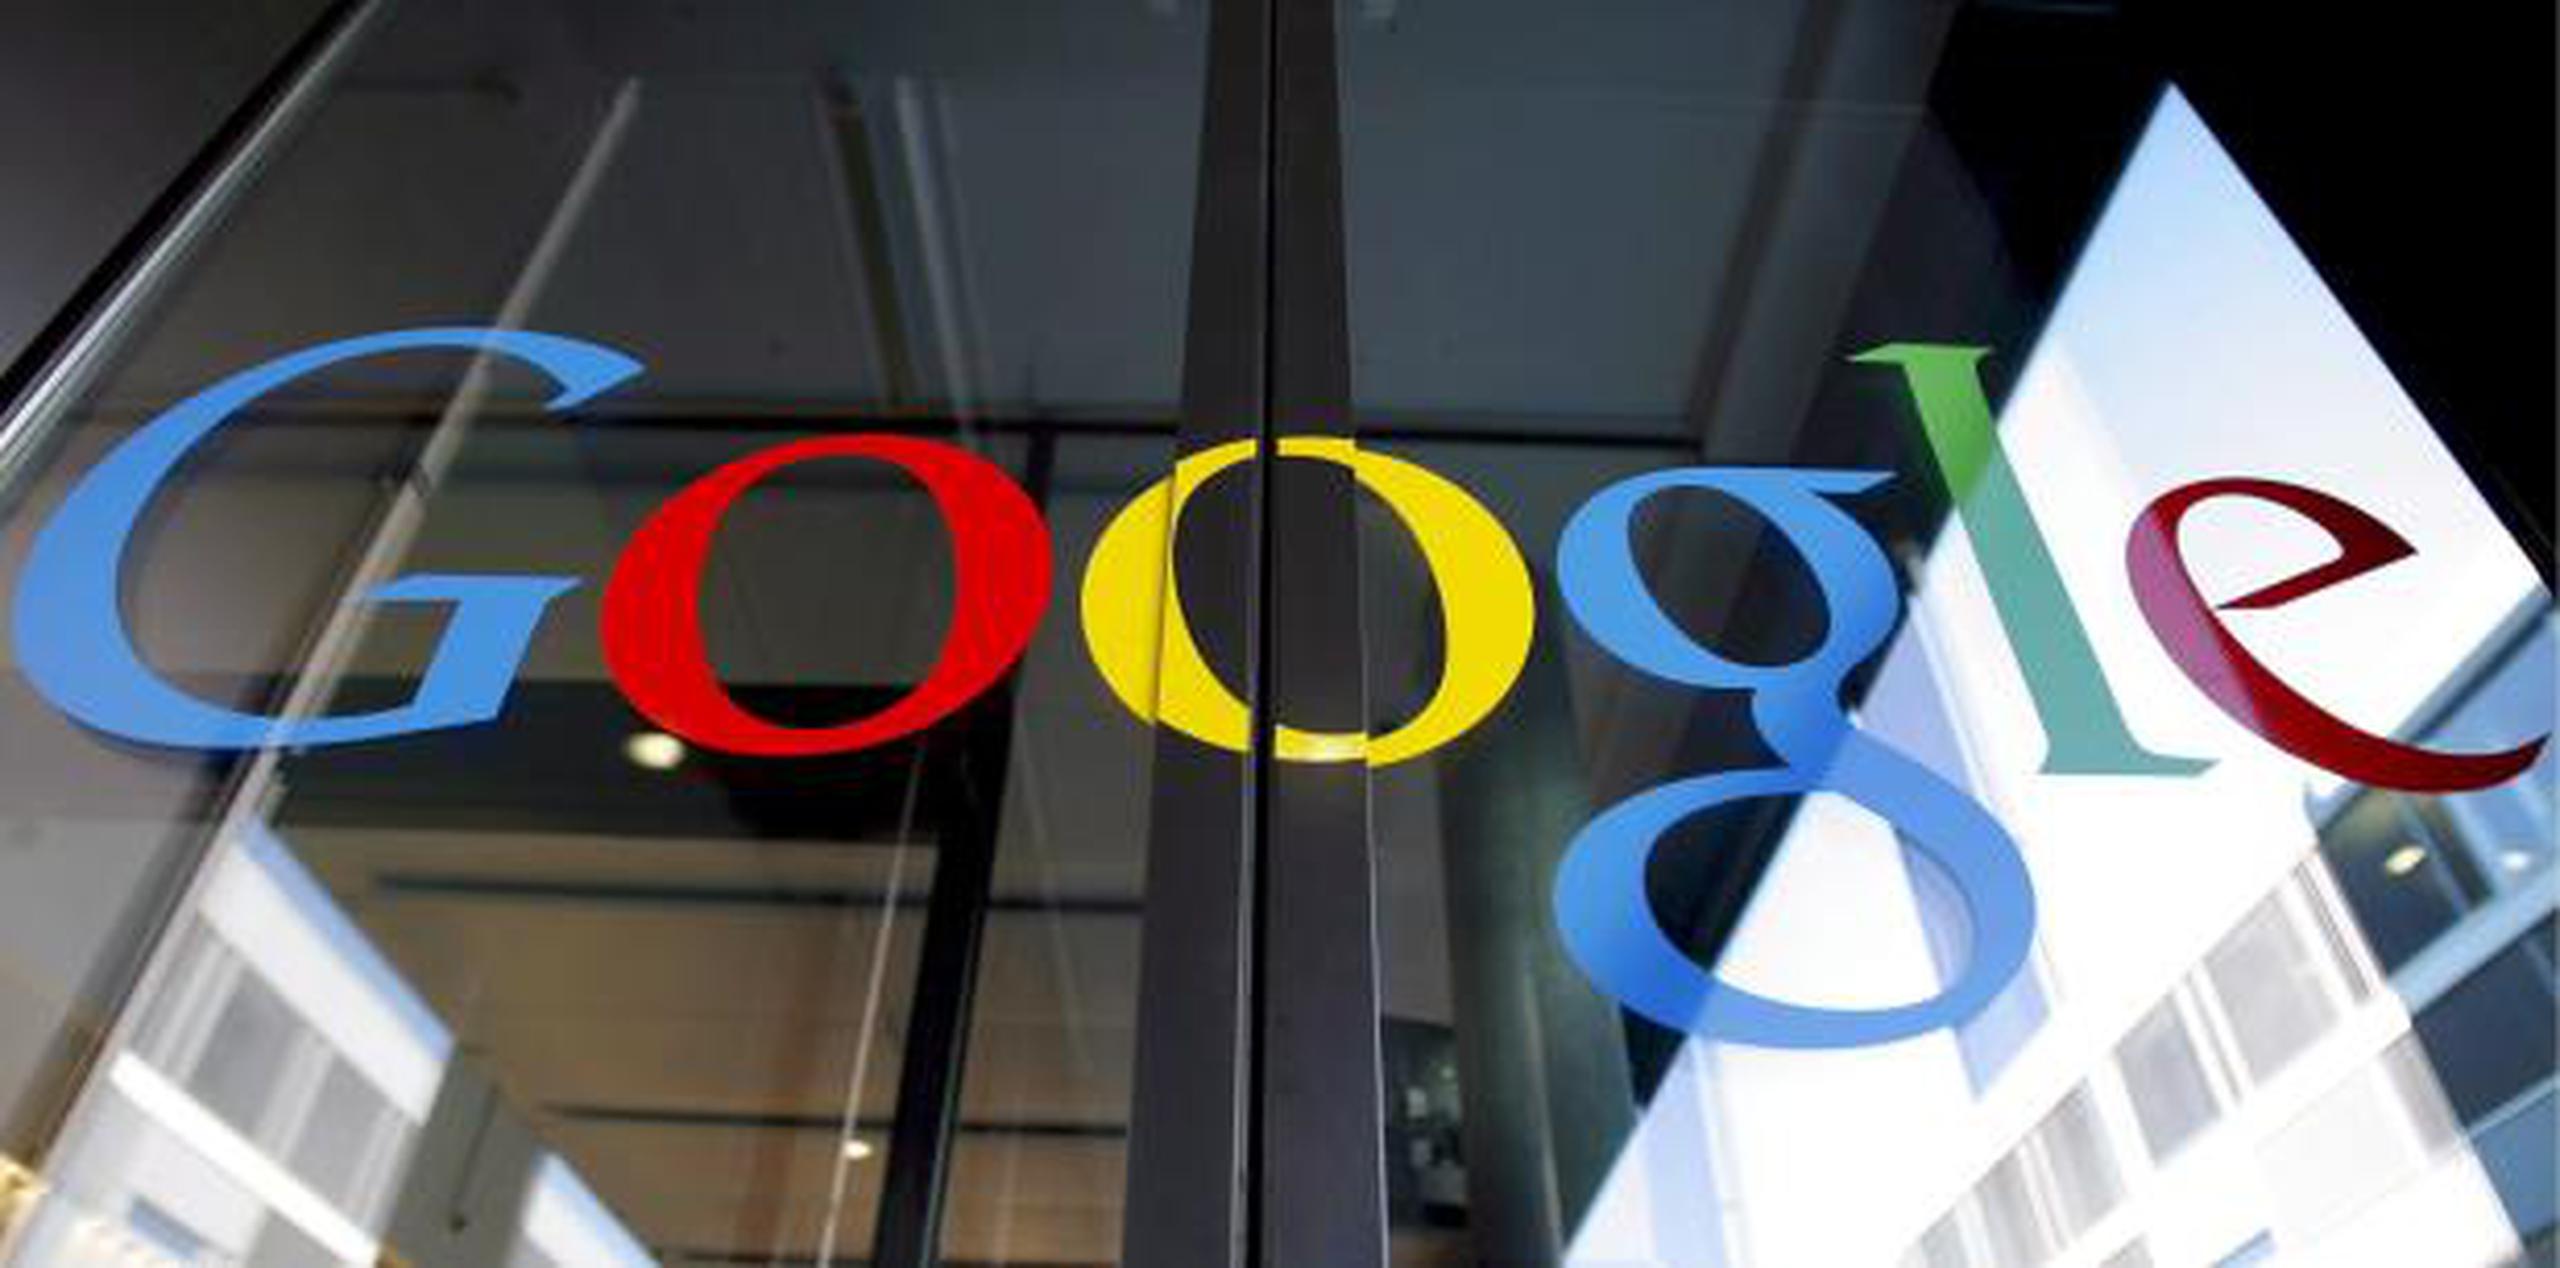 Google dijo en una declaración que está “profundamente comprometida” a la transparencia y el control por los usuarios. (EFE / Walter Bieri)